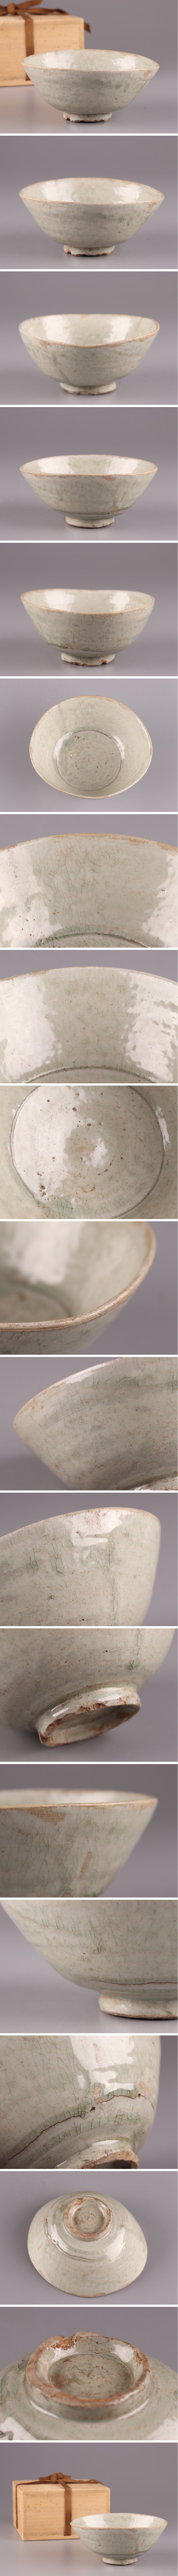 大得価最新作古美術 朝鮮古陶磁器 高麗 李朝 青白磁 茶碗 時代物 極上品 初だし品 3678 高麗